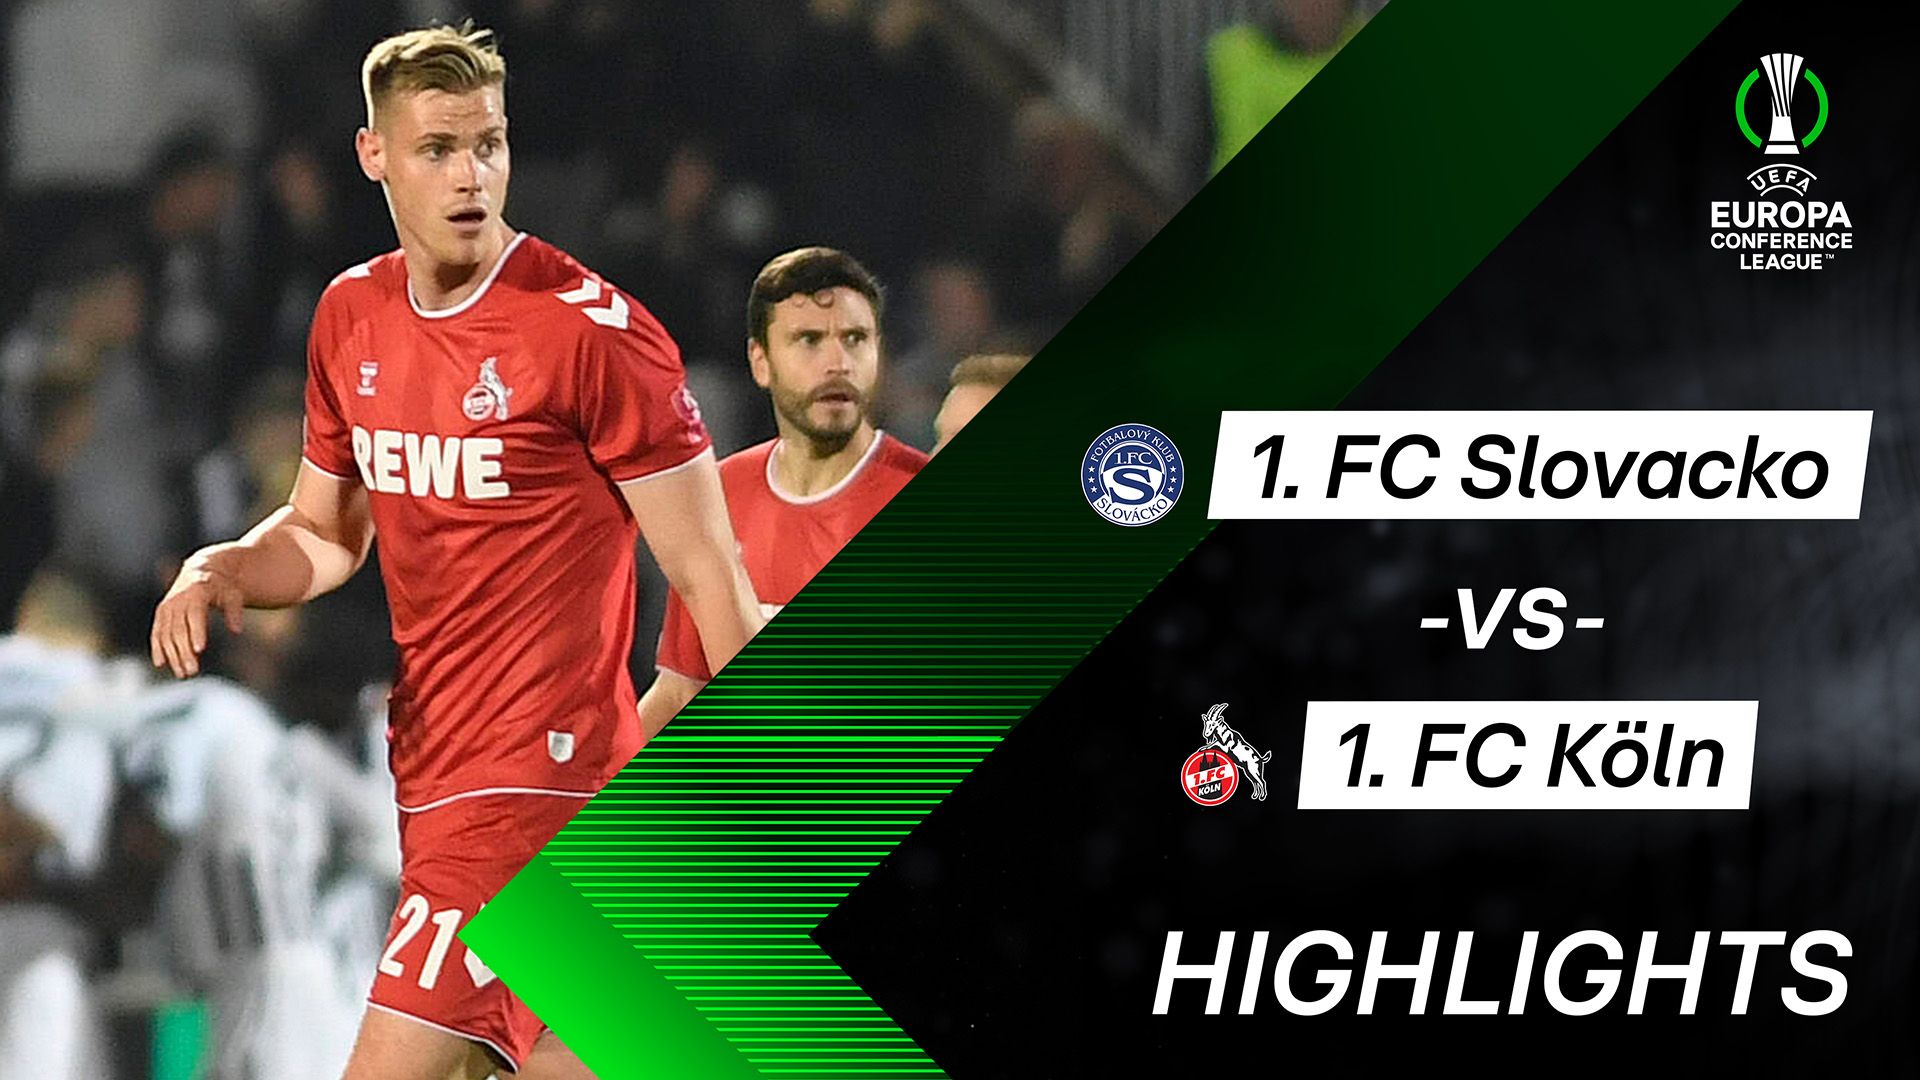 Highlights: FC Slovacko vs. 1. FC Köln